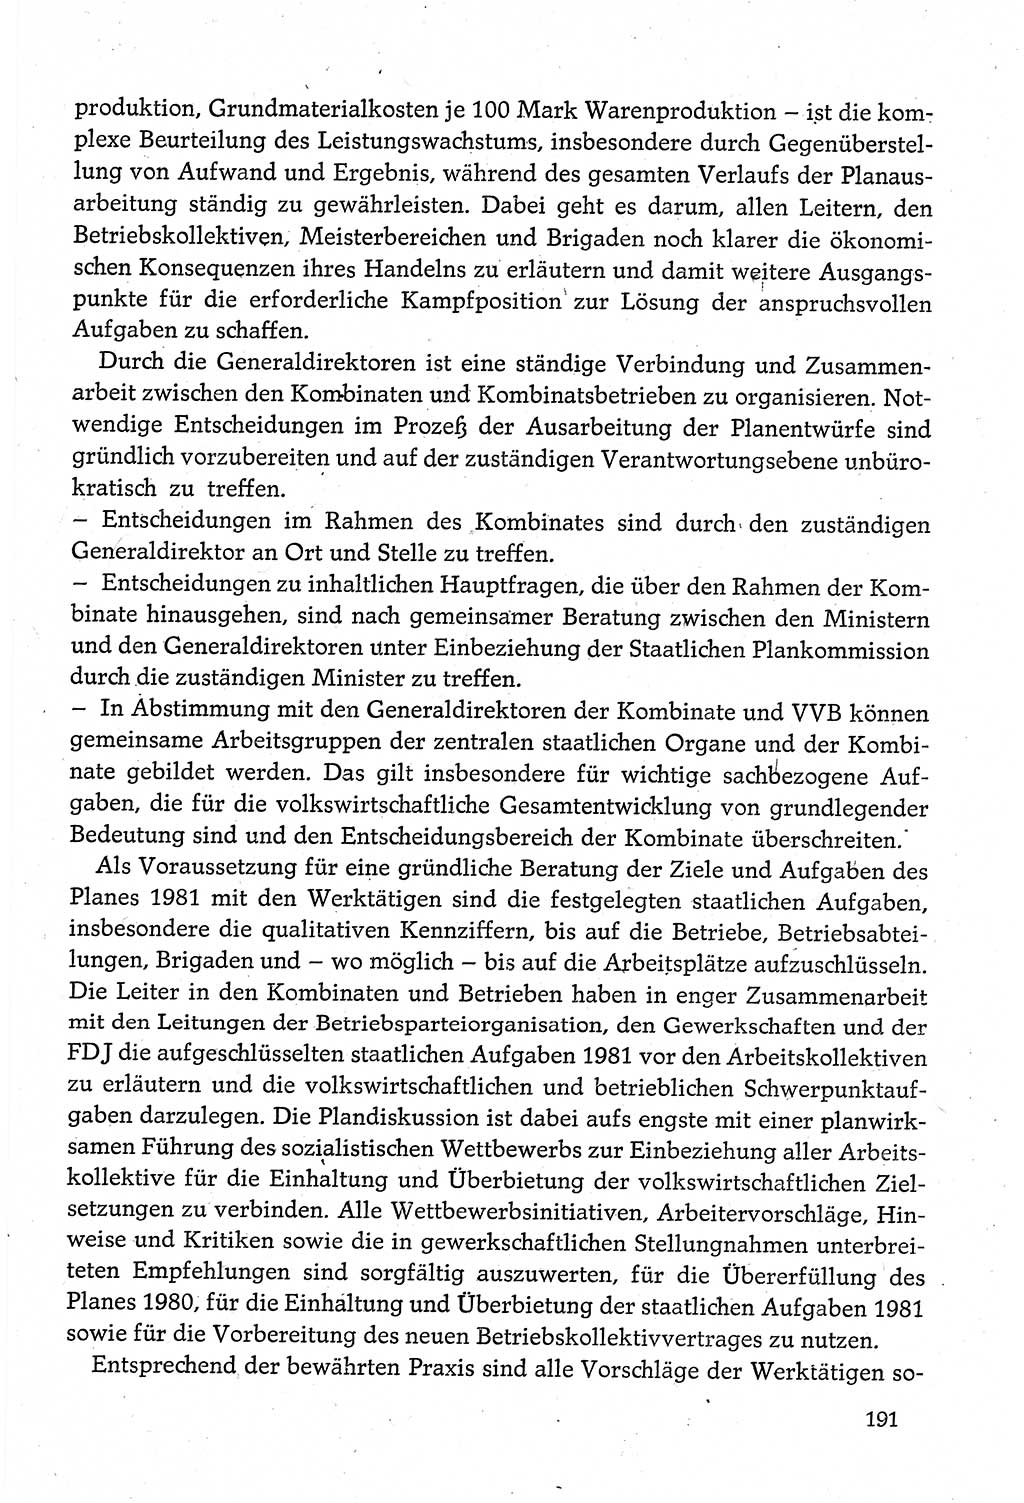 Dokumente der Sozialistischen Einheitspartei Deutschlands (SED) [Deutsche Demokratische Republik (DDR)] 1980-1981, Seite 191 (Dok. SED DDR 1980-1981, S. 191)